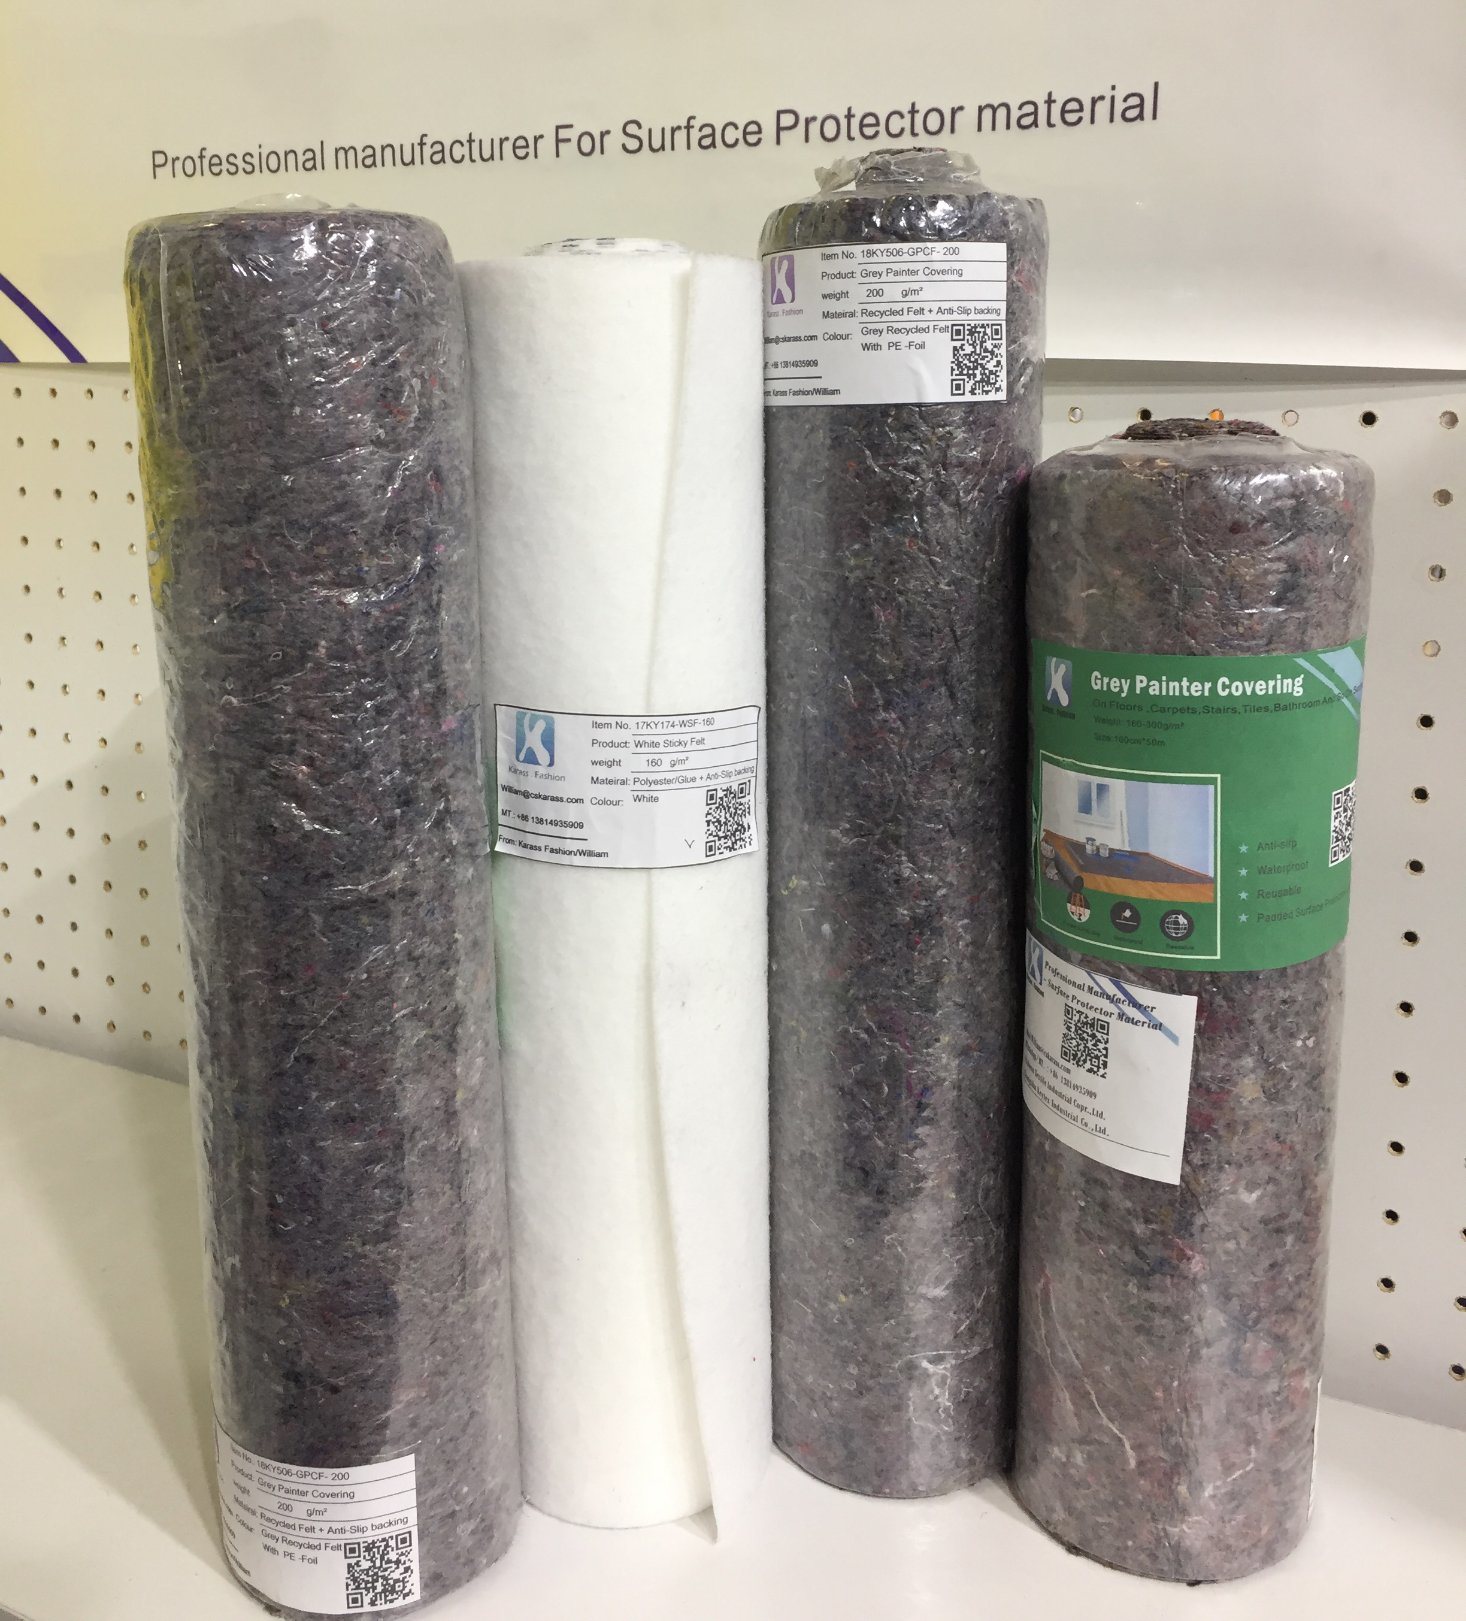 A legjobb minőségű padlóvédő újrafelhasználható ragasztó filc lap